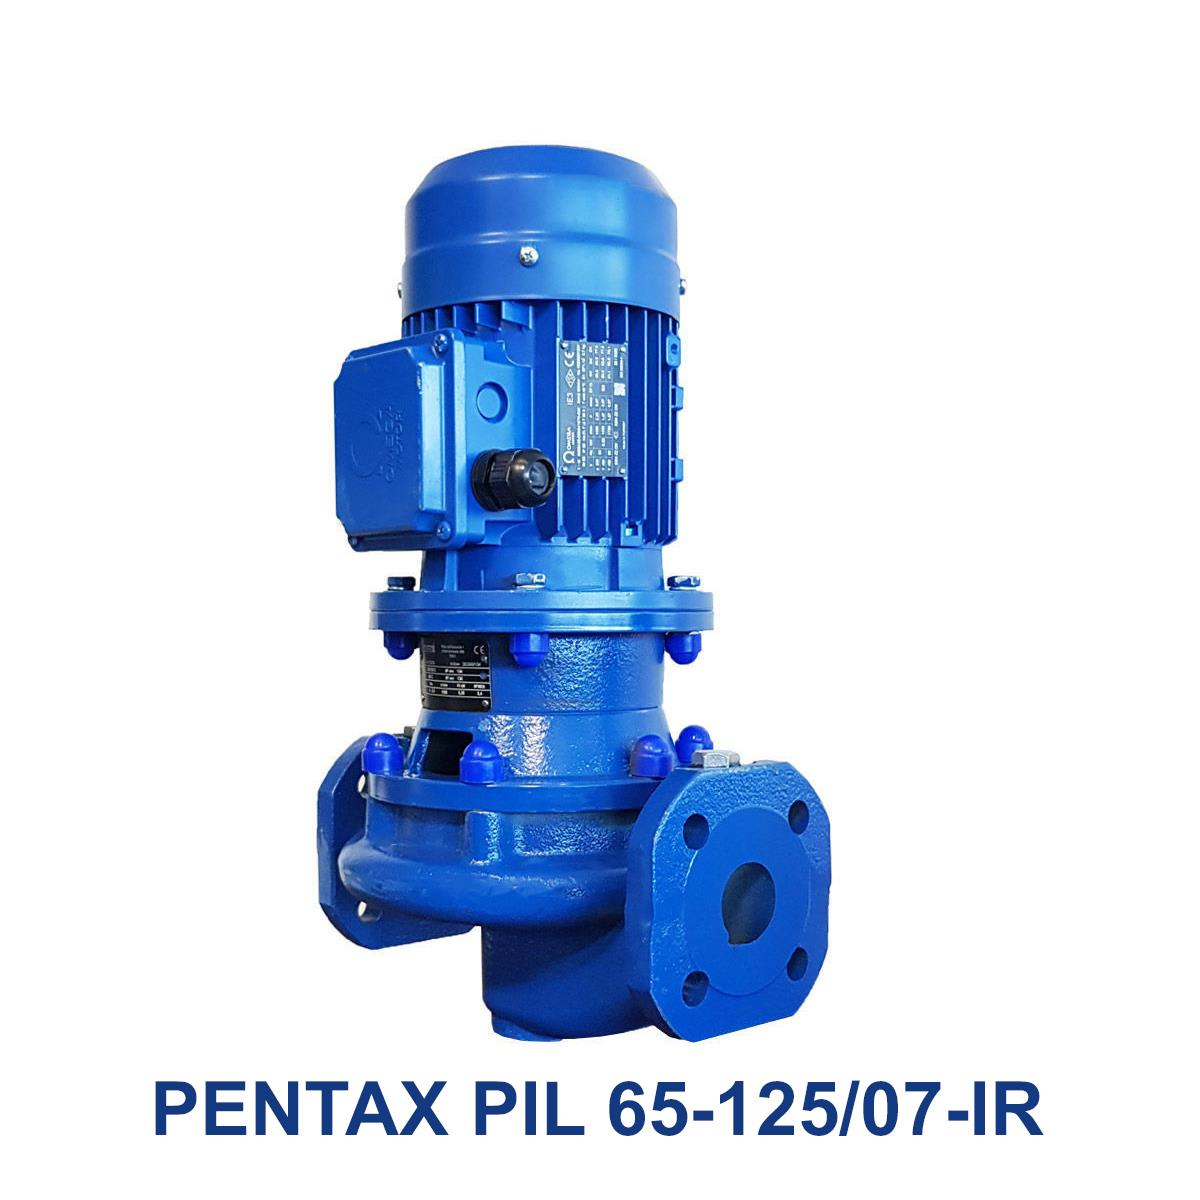 PENTAX-PIL-65-125-07-IR